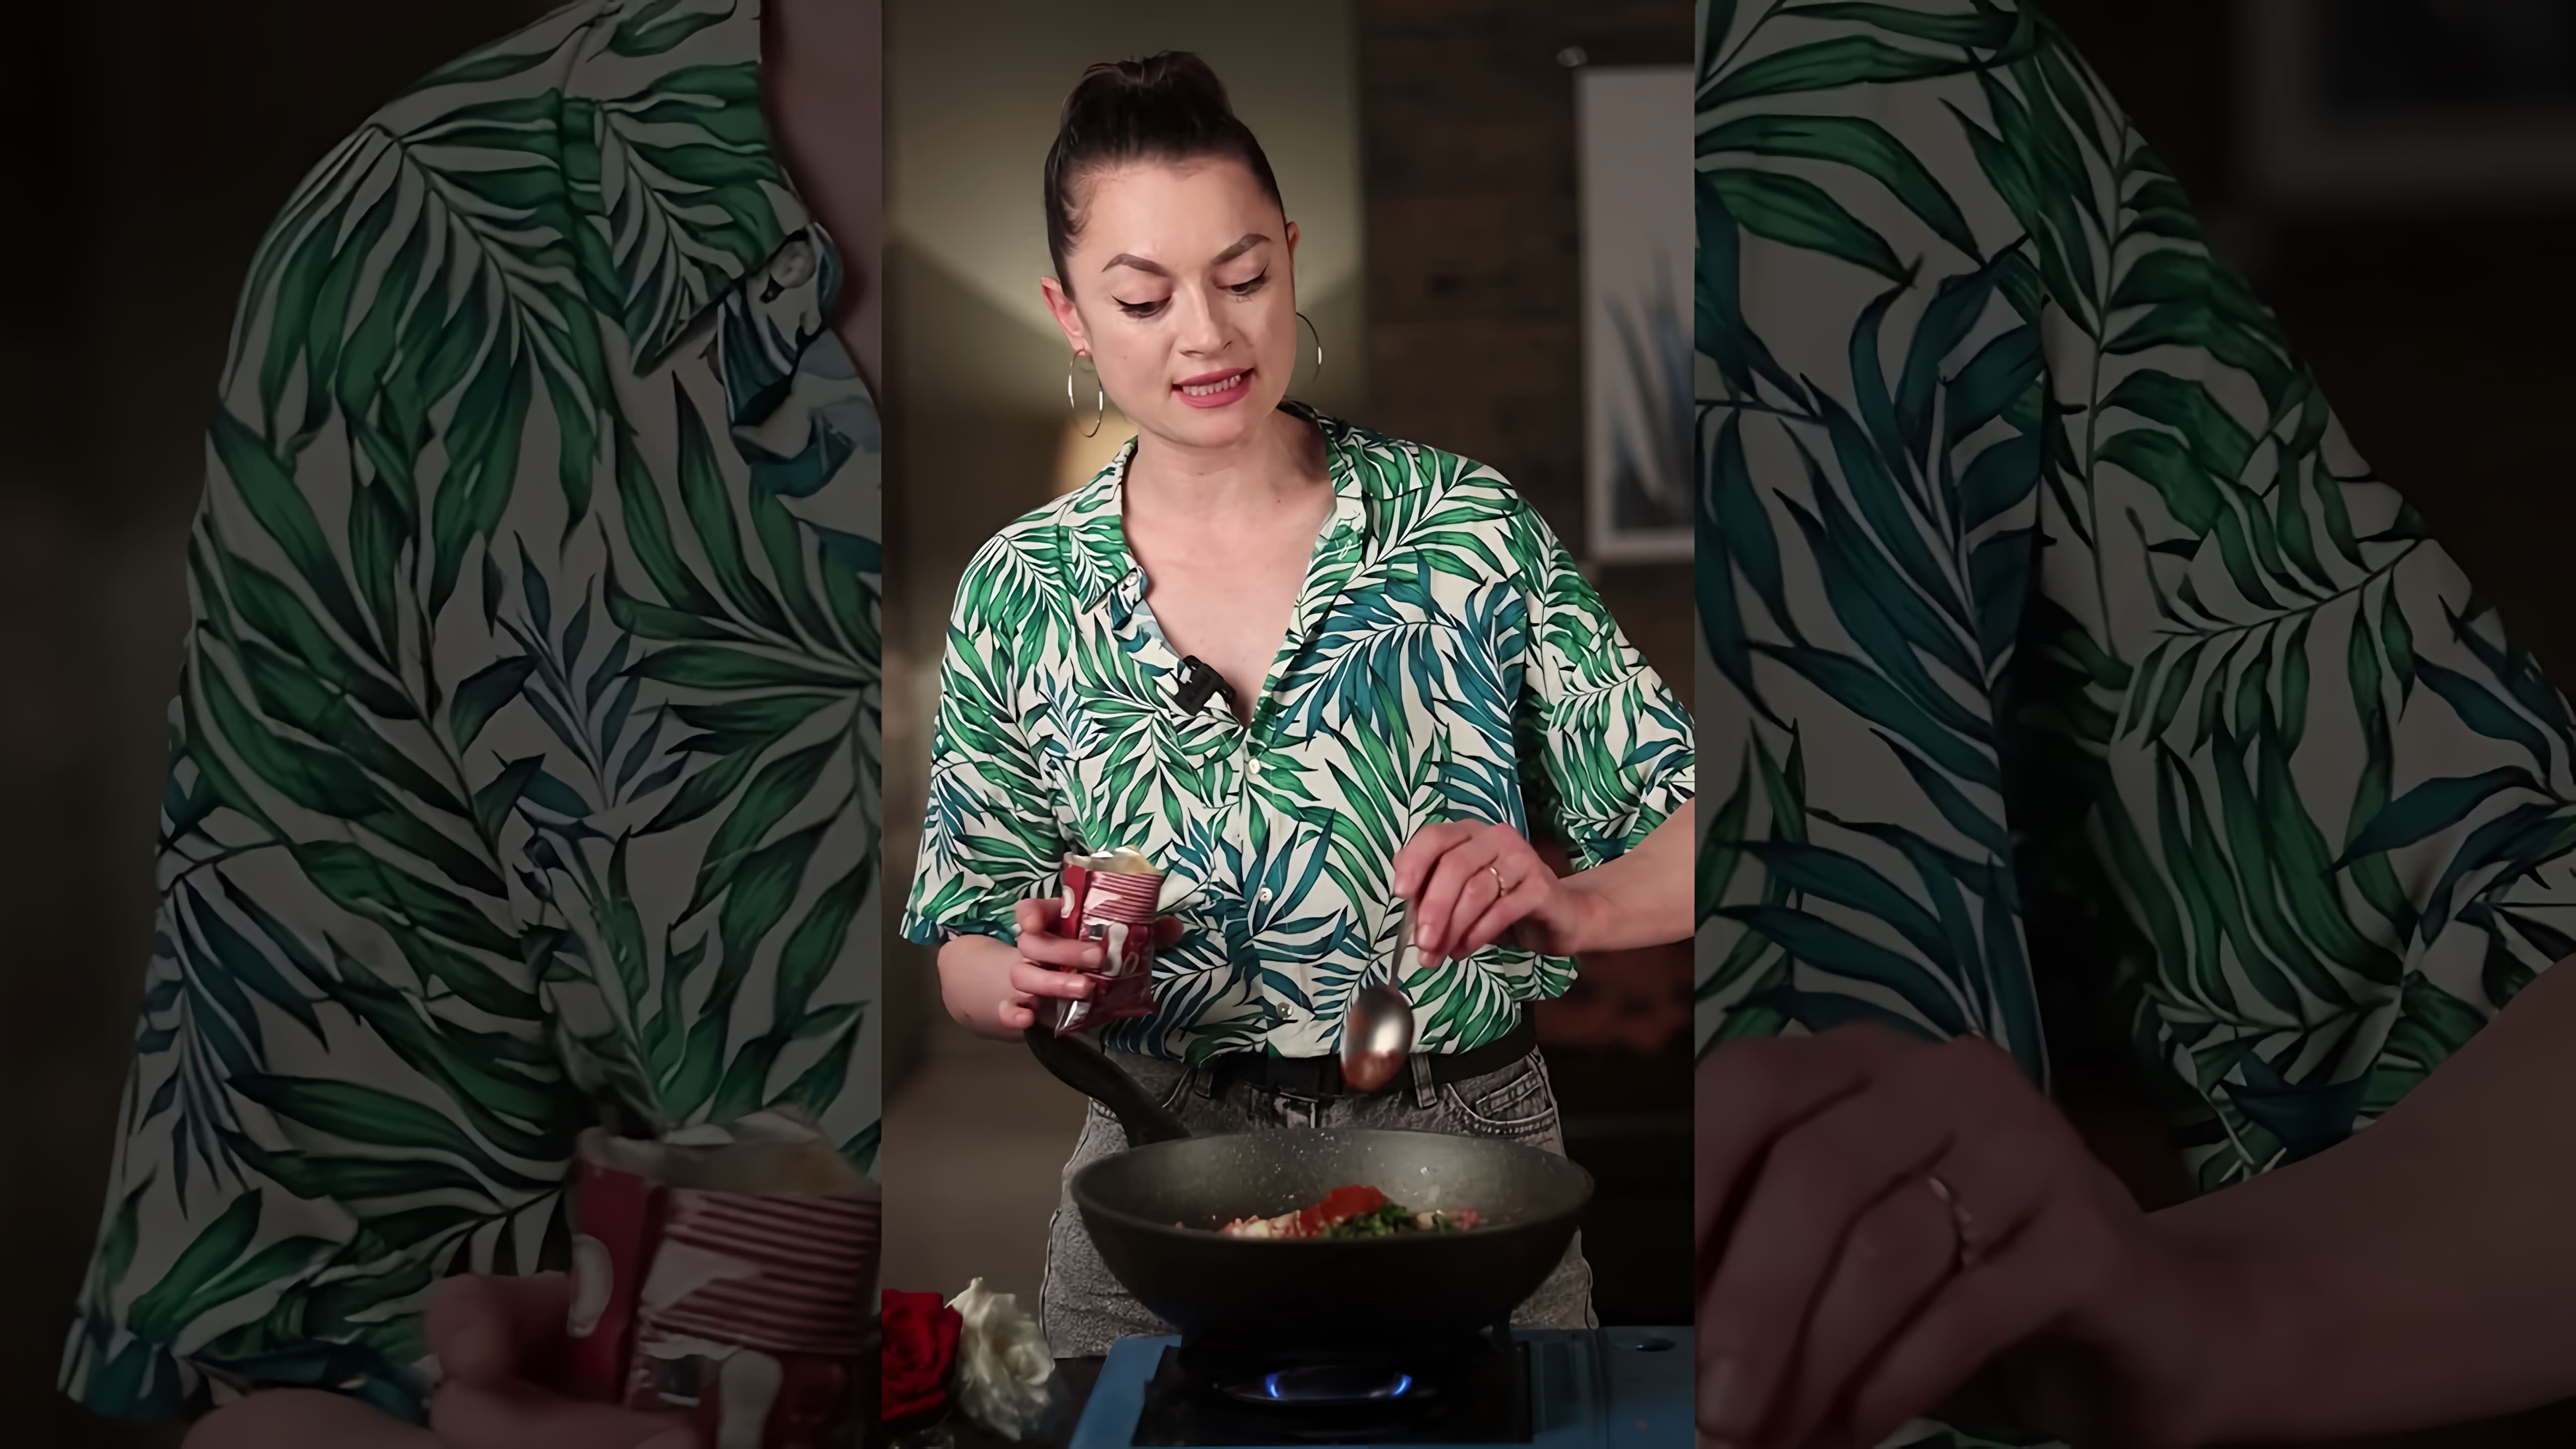 В этом видео демонстрируется рецепт необычного и вкусного супа, который настолько впечатлил автора, что она упала и не смогла встать